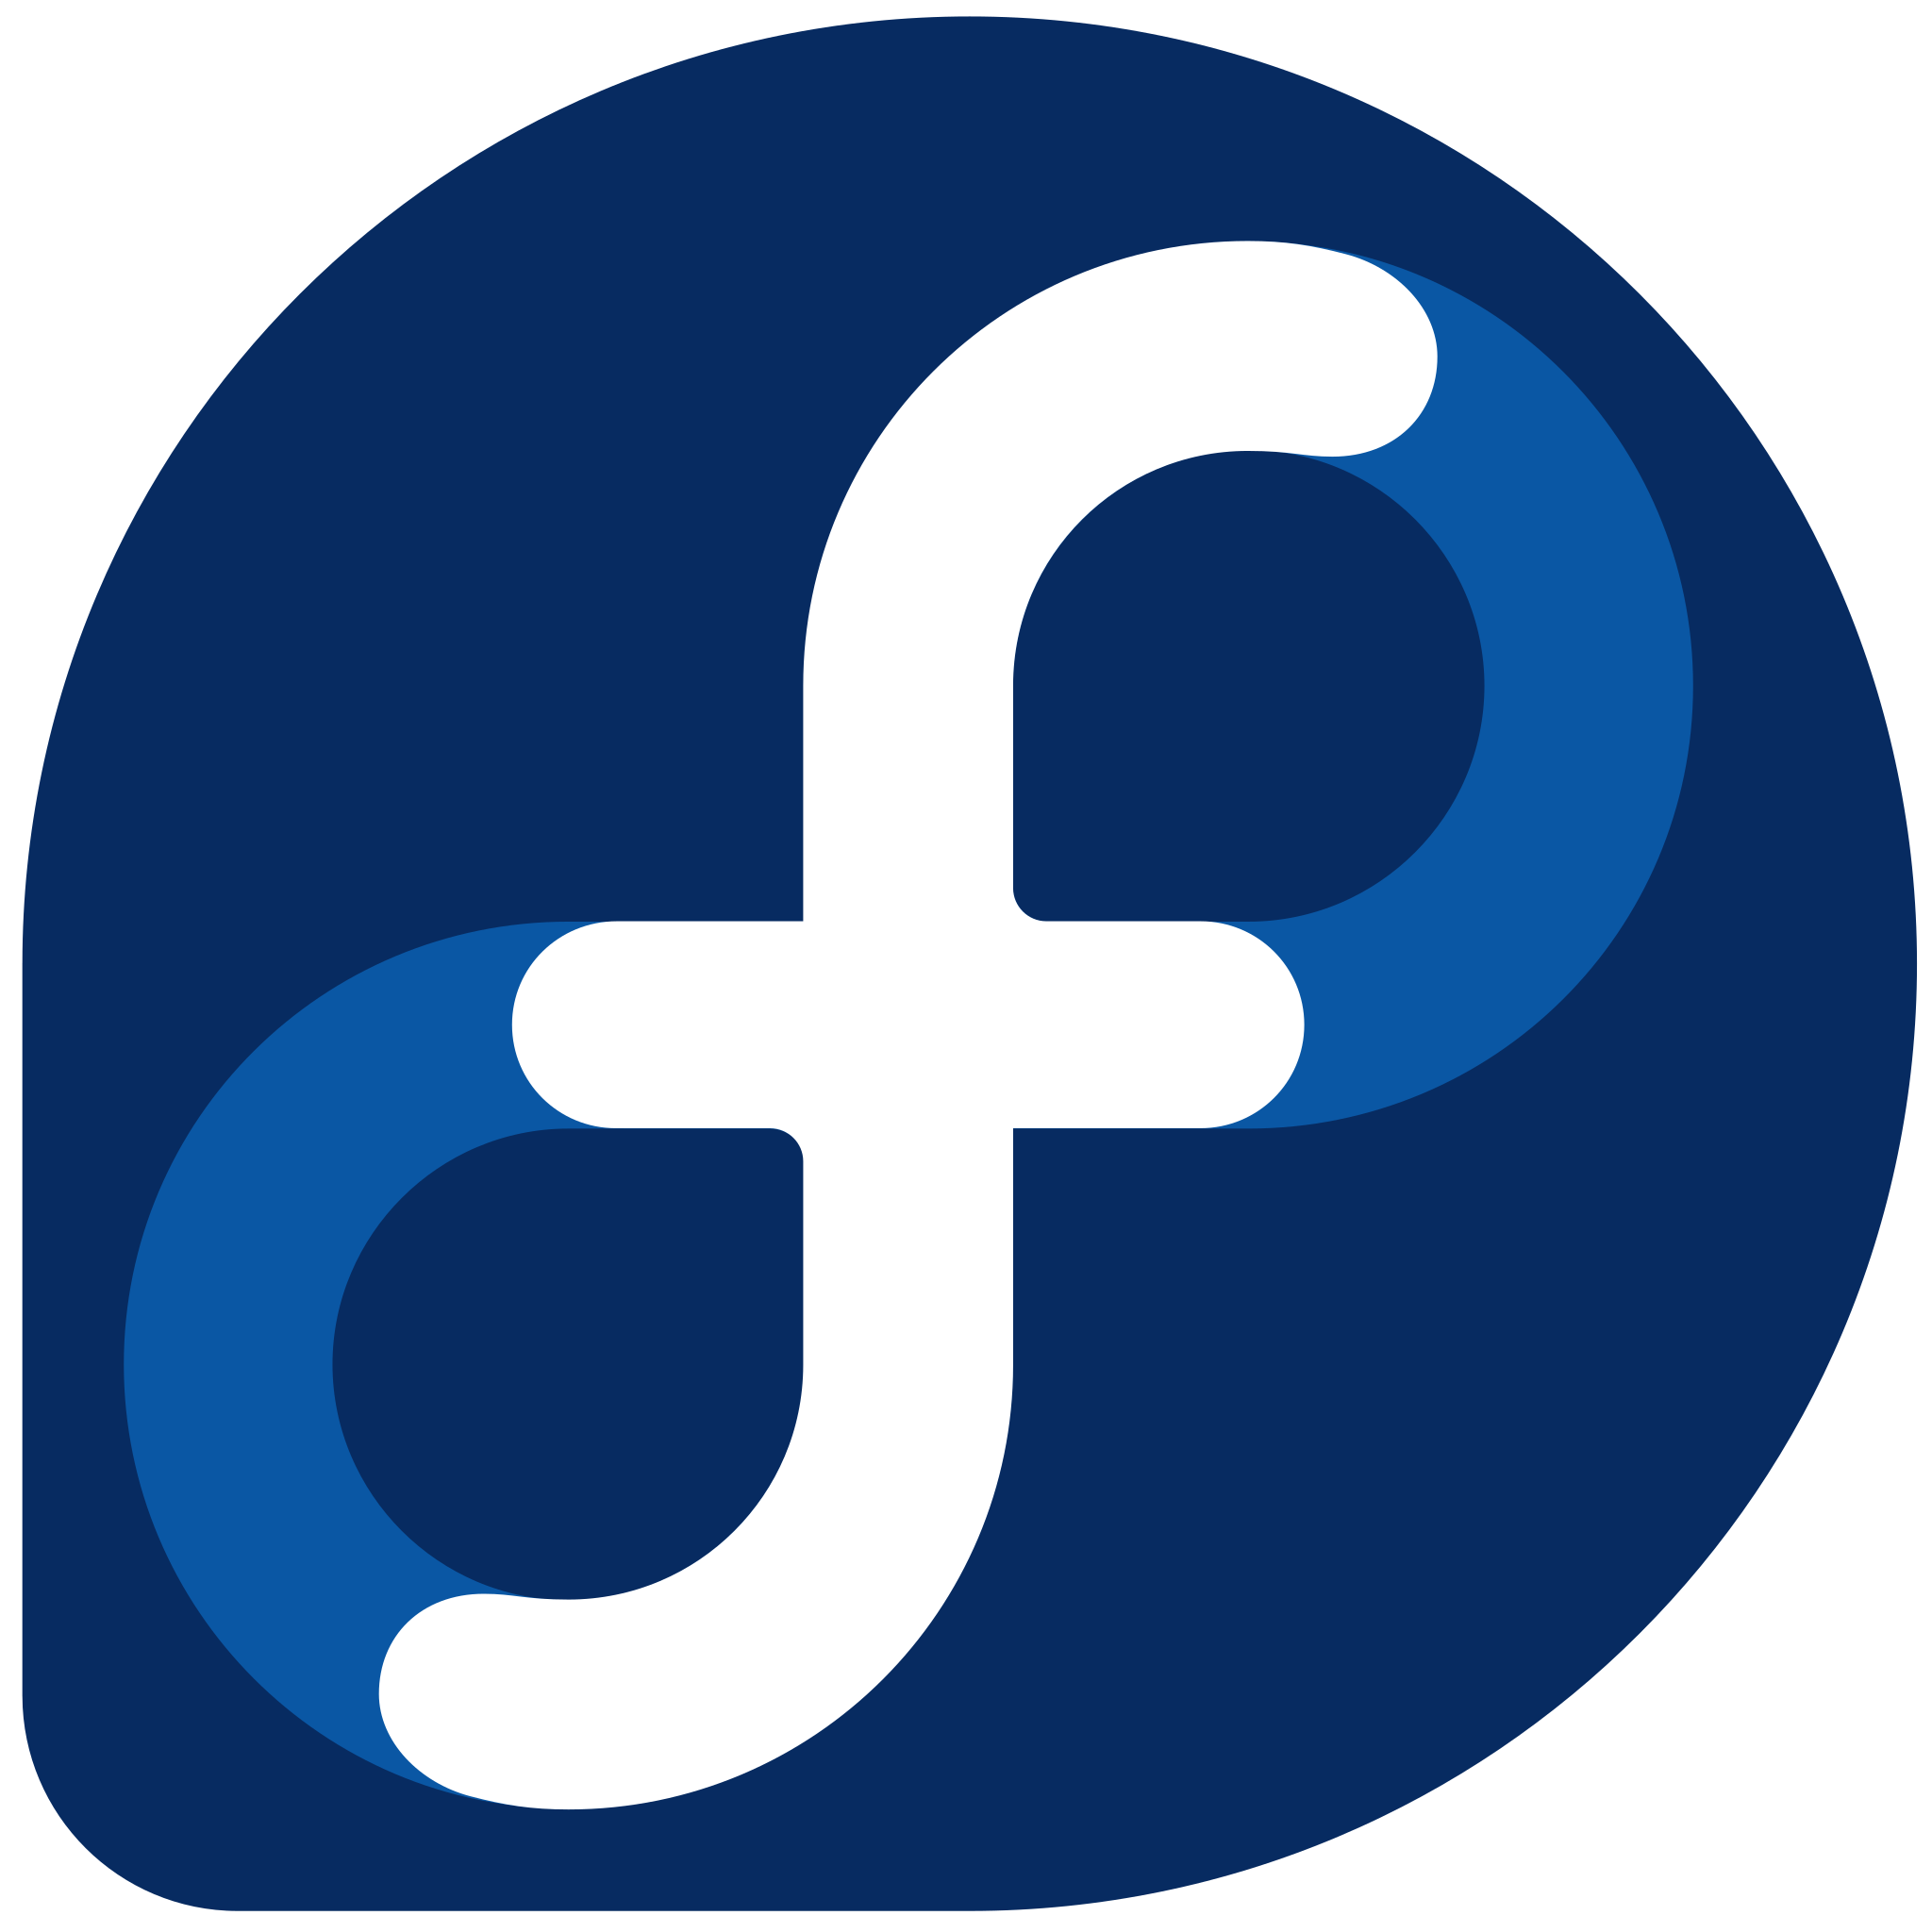 Fedora Linux OS